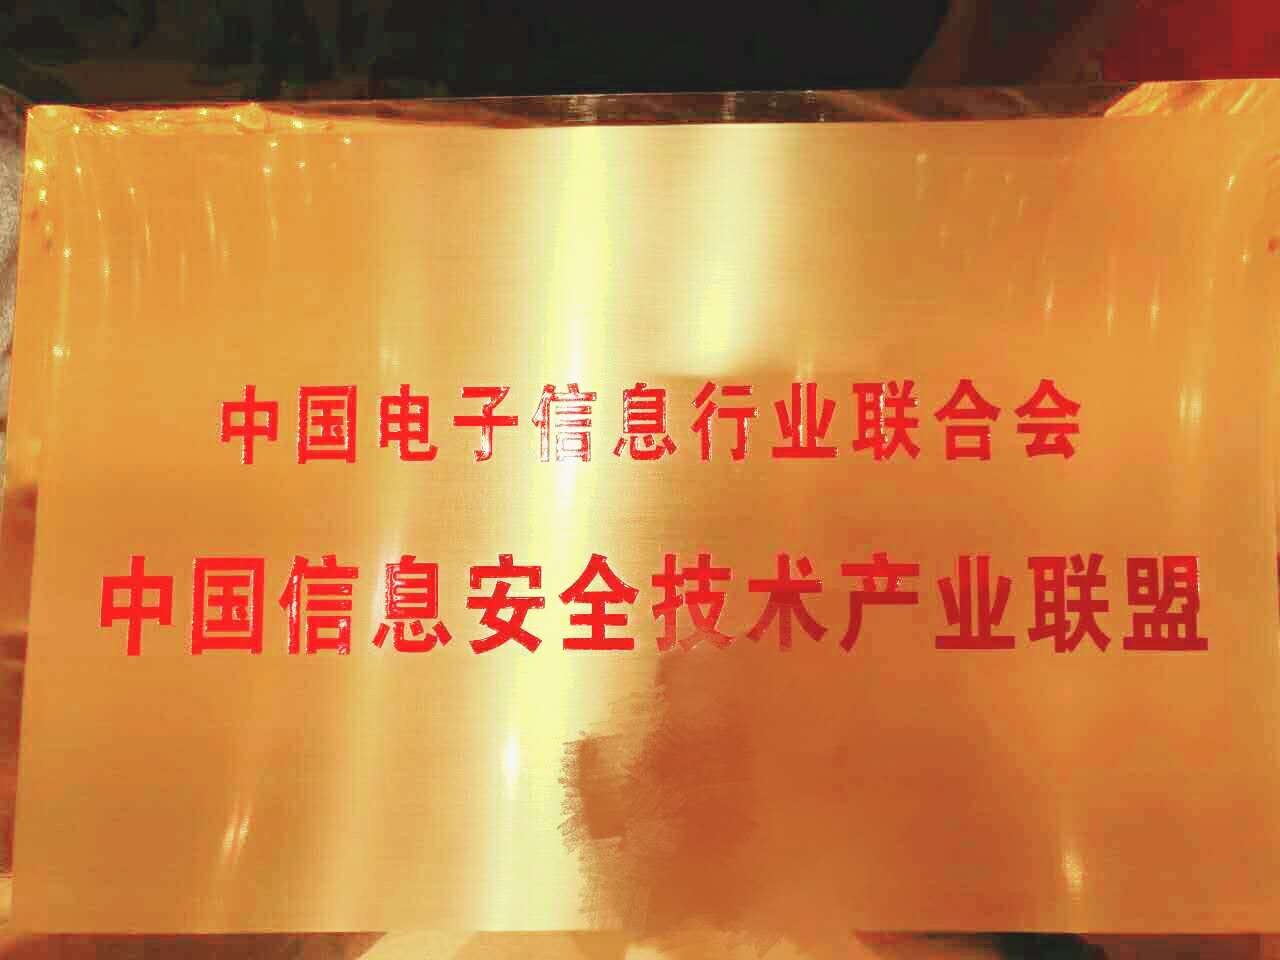 中国信息安全技术联盟